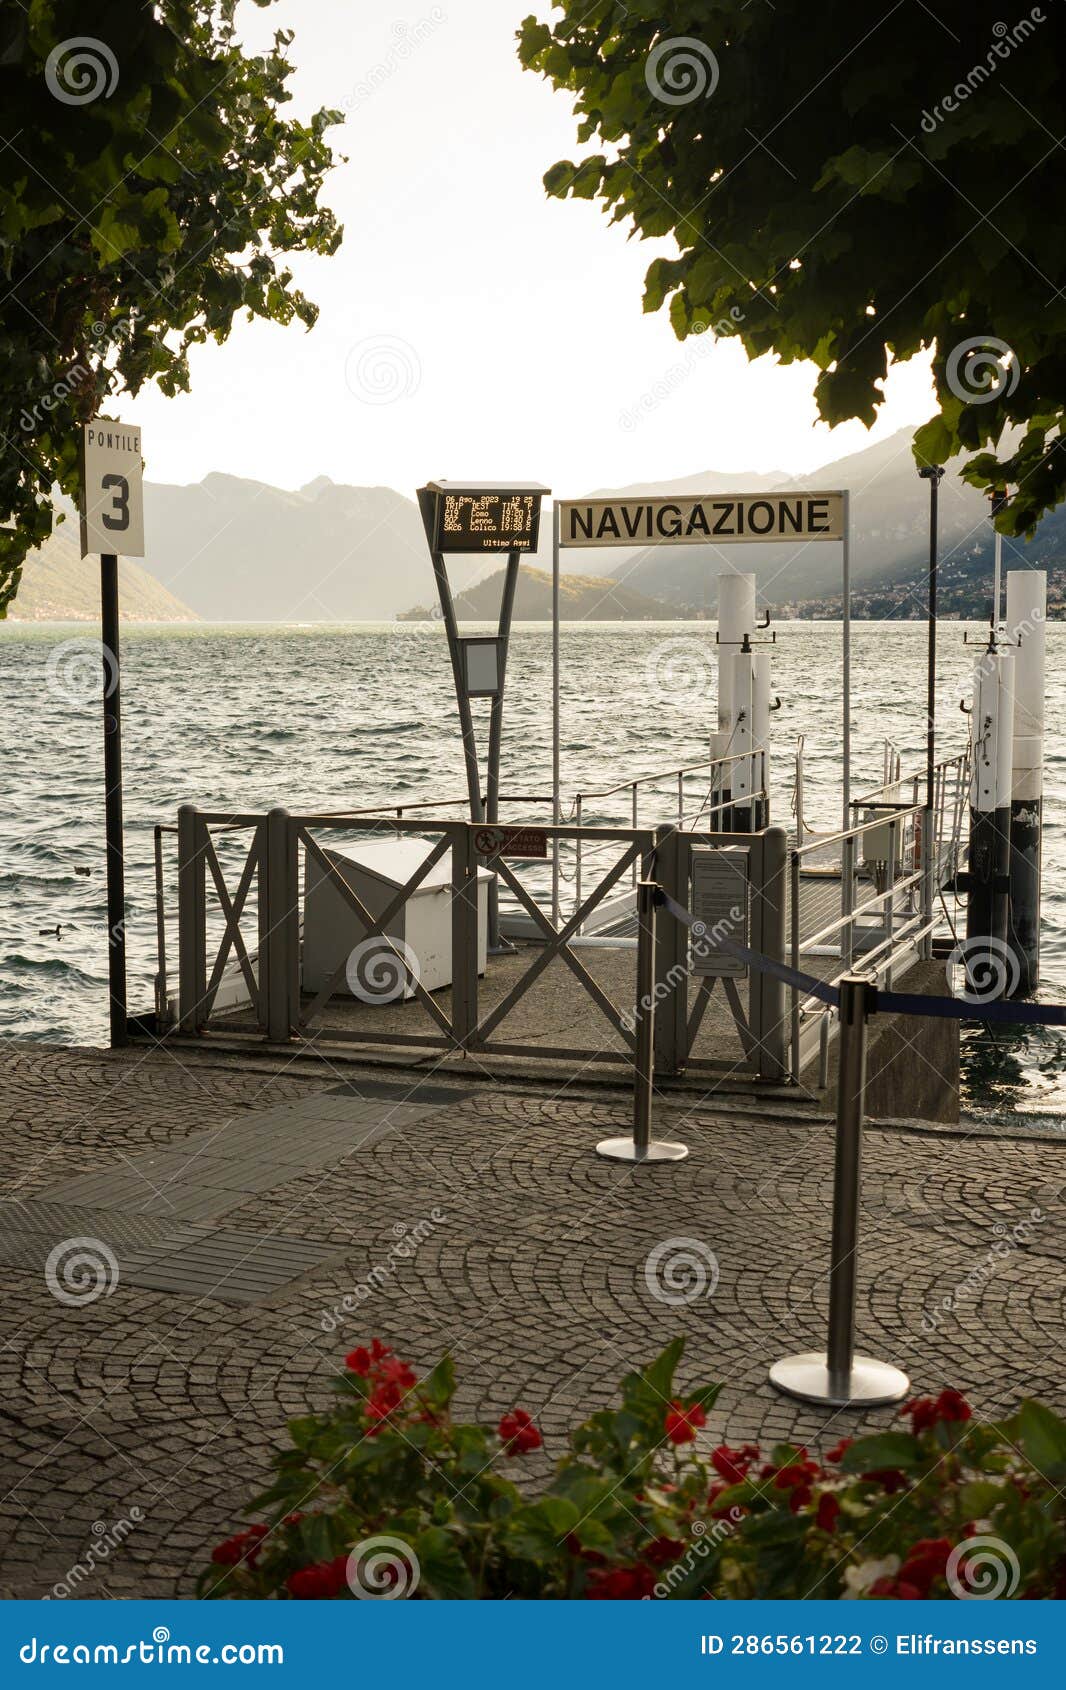 public boat service, bellagio, lake como